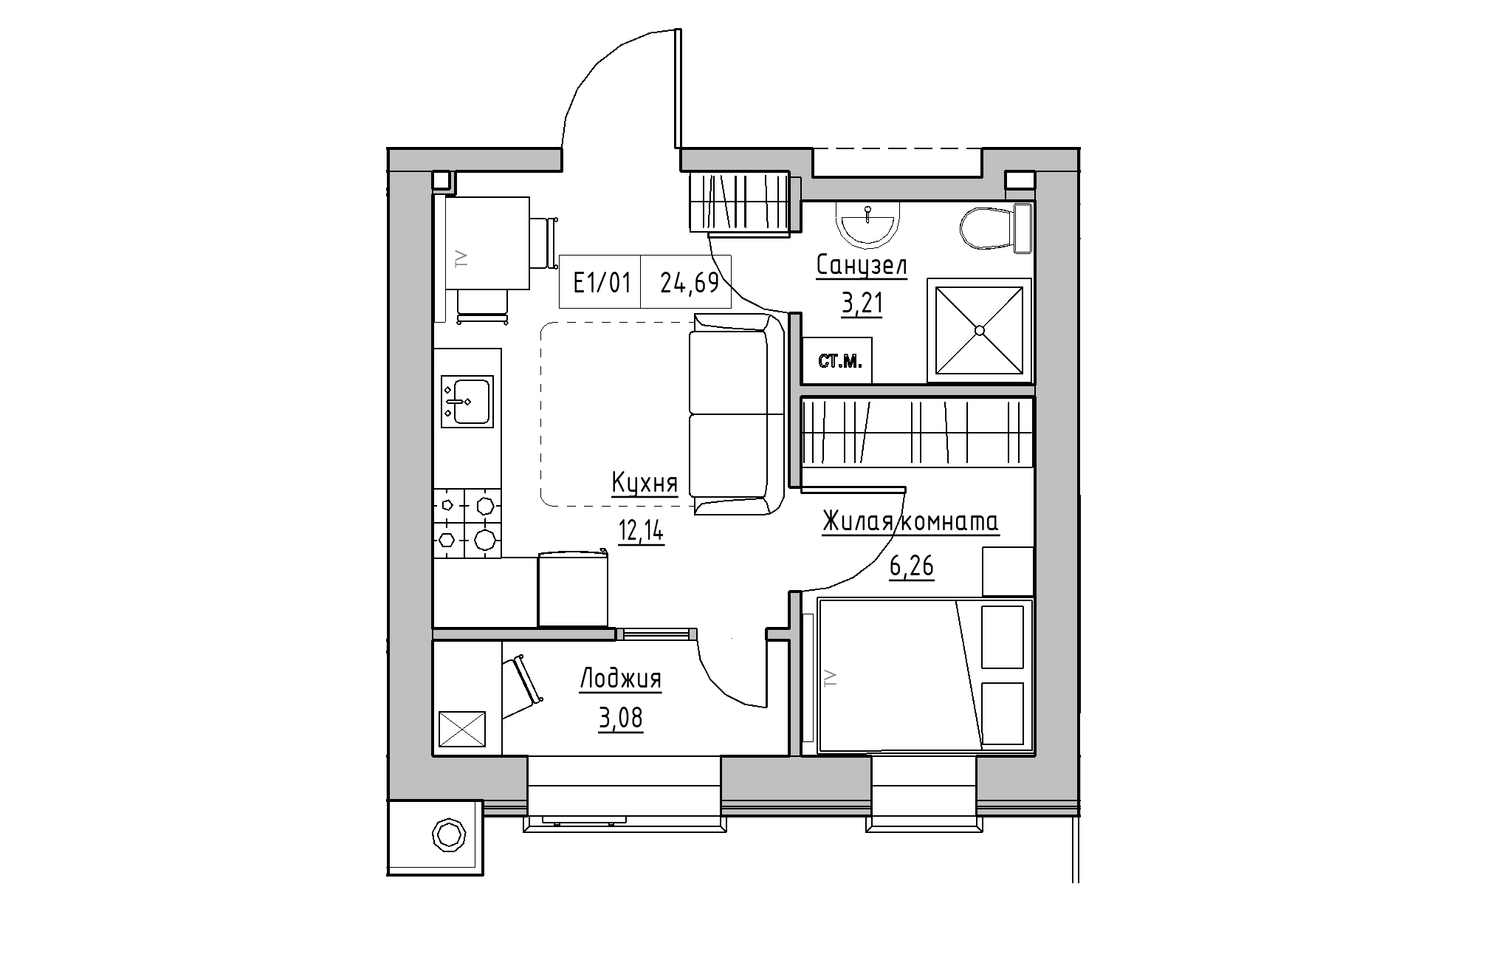 Планування 1-к квартира площею 24.69м2, KS-013-02/0012.